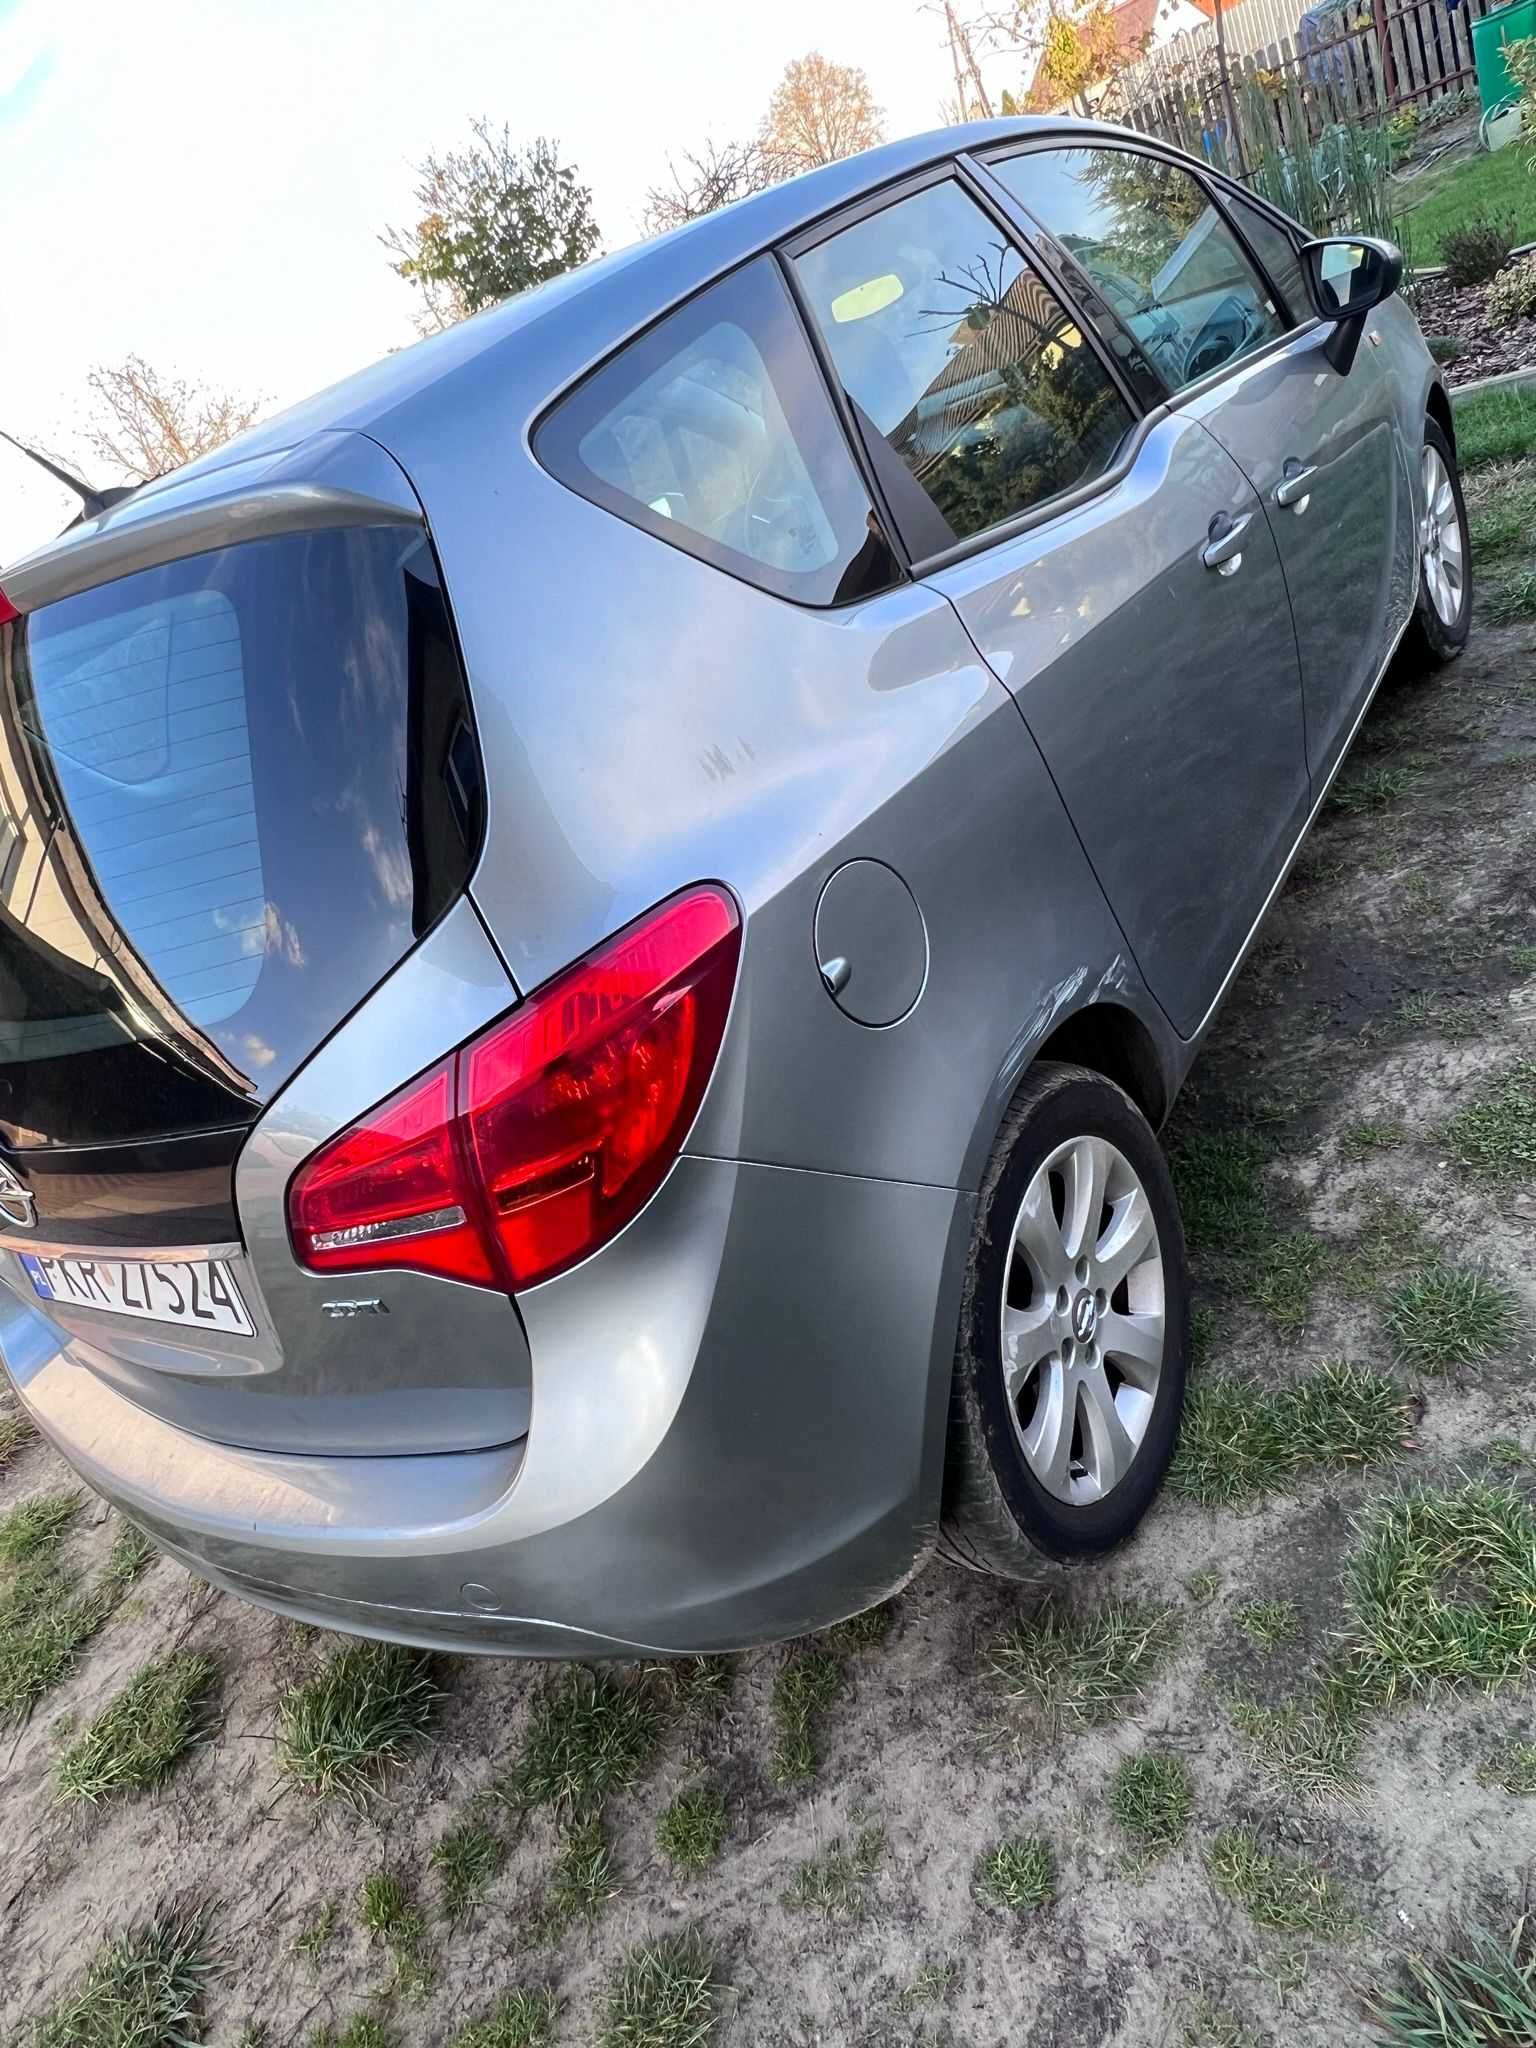 Opel Meriva 2011, 1.3 CDTI,  140 000 km przebiegu, PRYWATNIE.